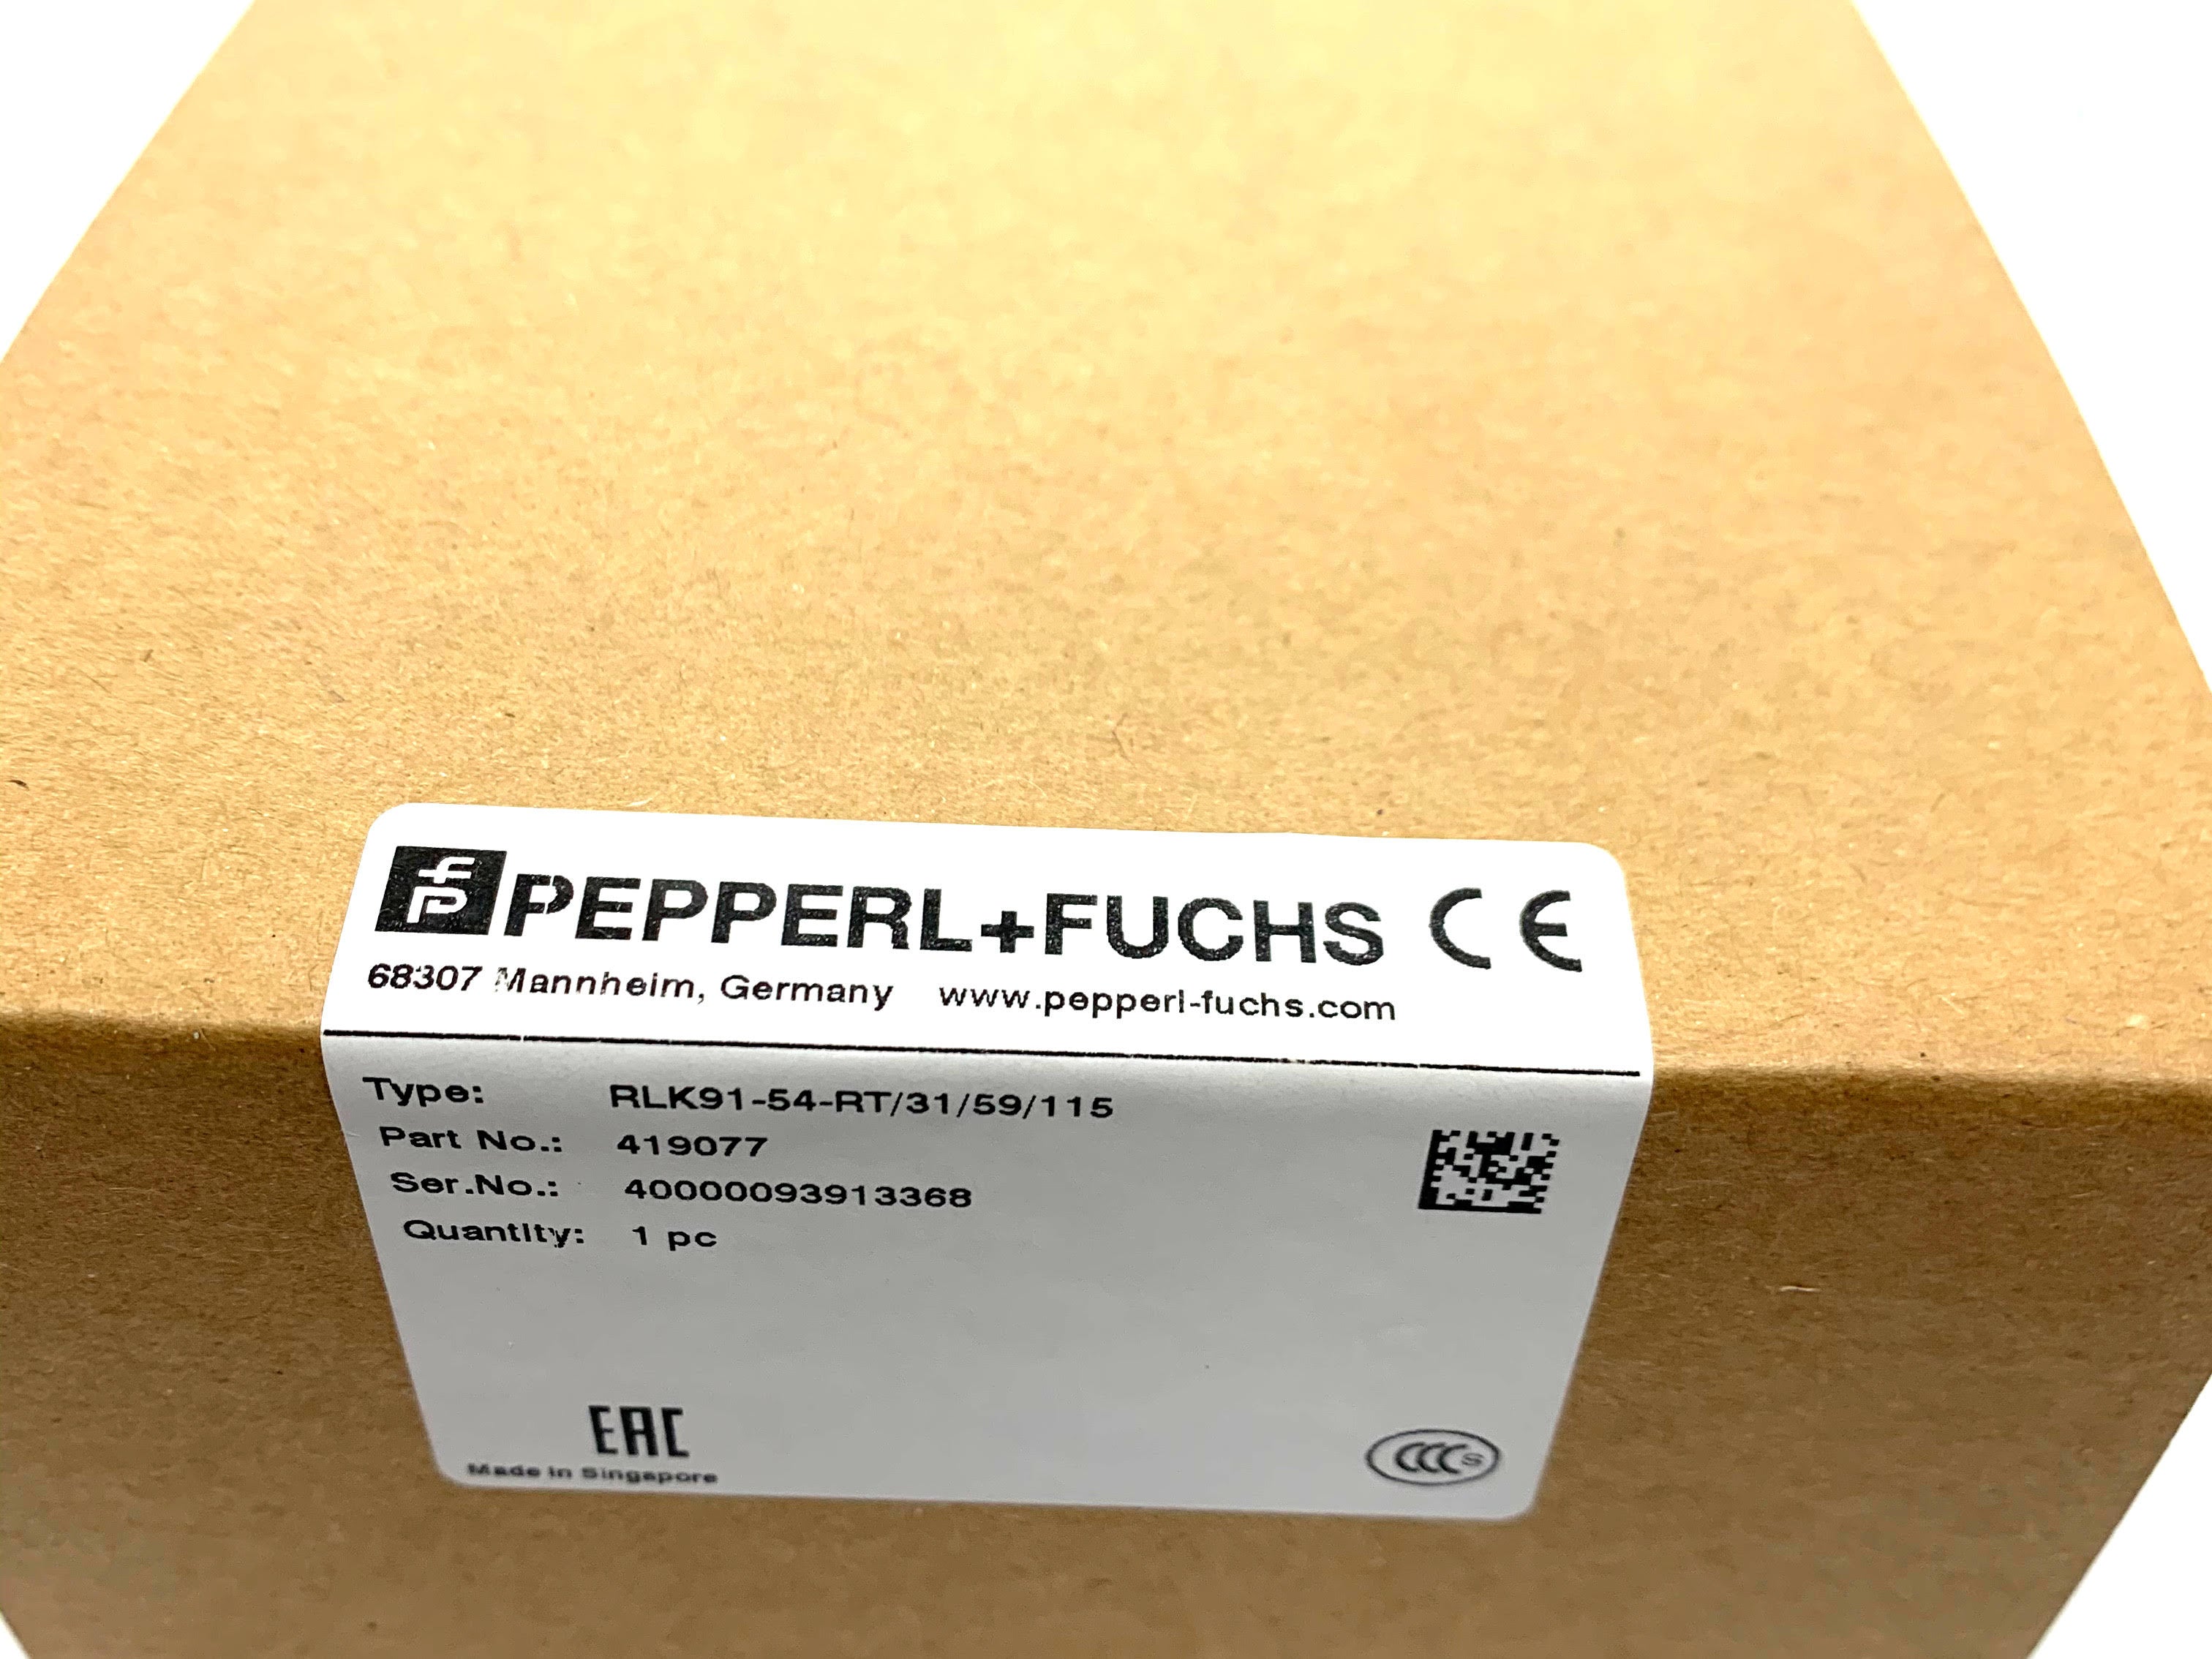 Pepperl + Fuchs Retro Reflective Sensor RLK91-54-RT/31/59/115 - ppdistributors